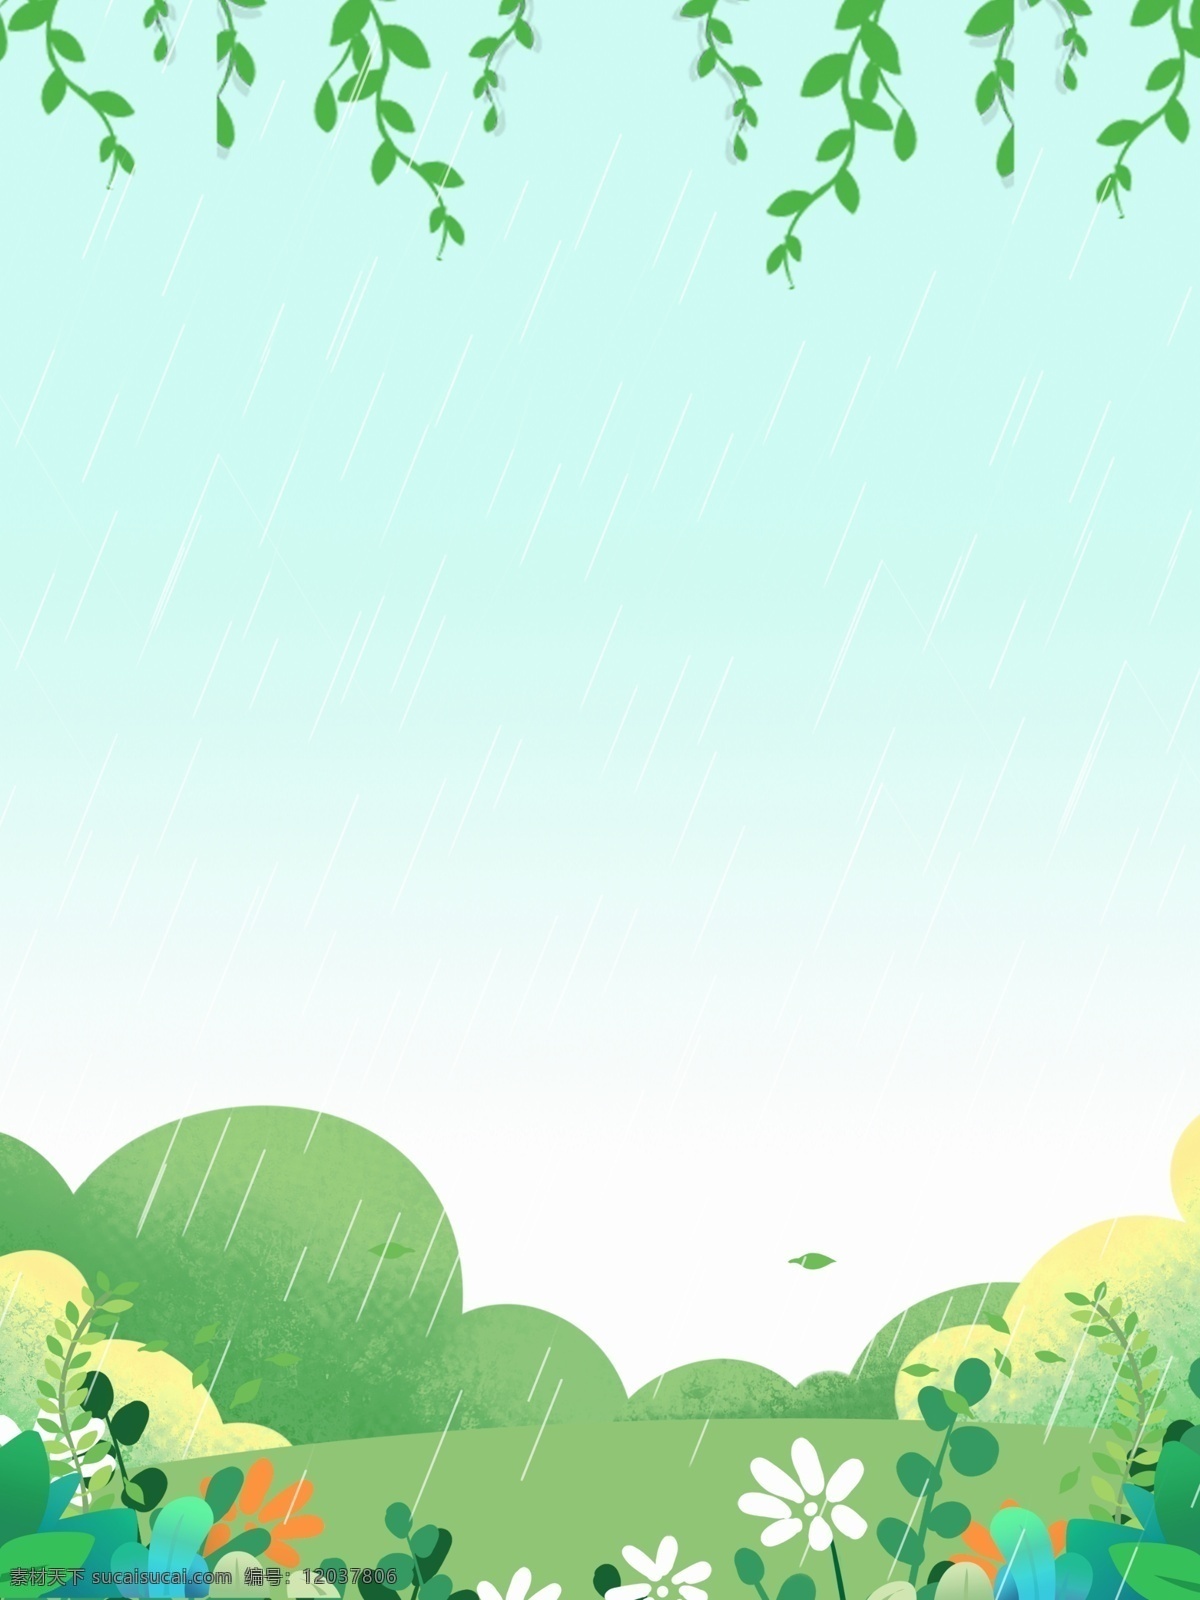 清新 春季 下雨 草地 背景 绿地背景 蓝天白云 叶子 山水风景 雨季 柳条 通用背景